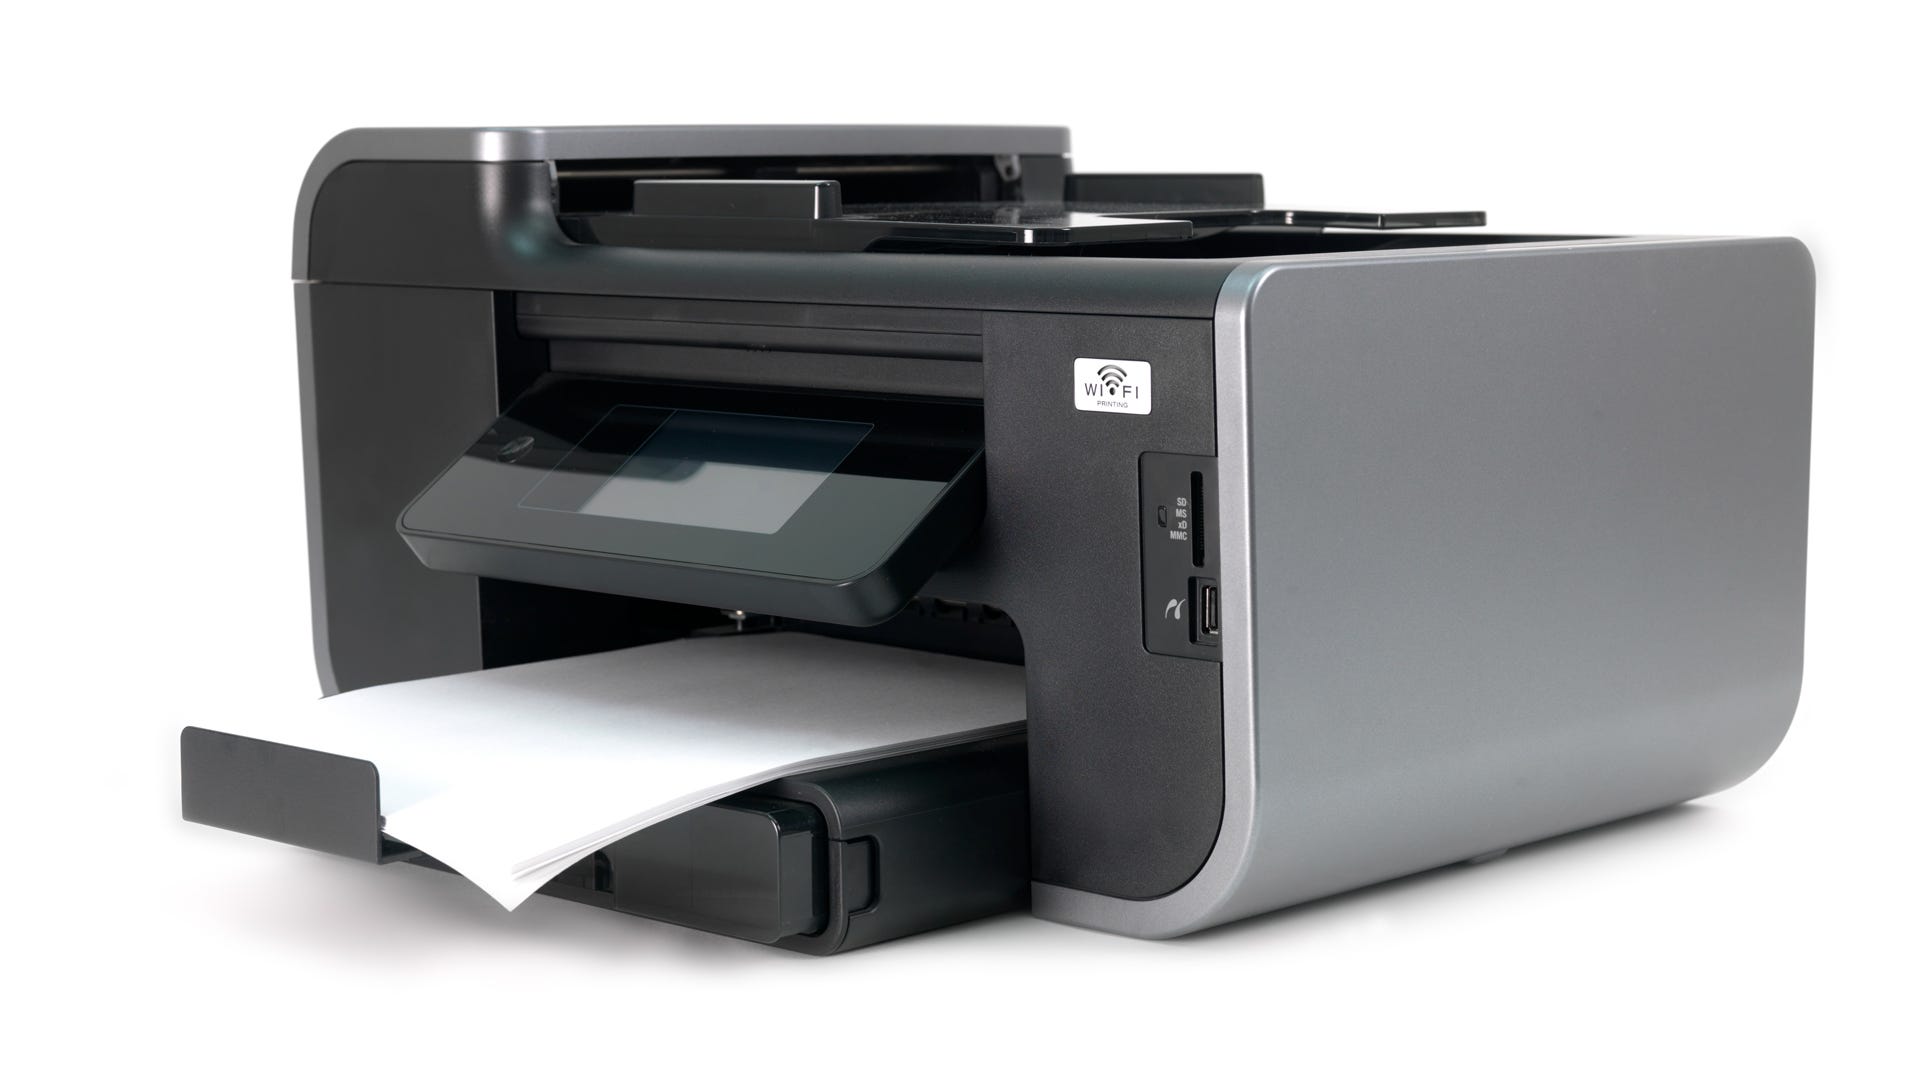 Printer keeps printing blank pages